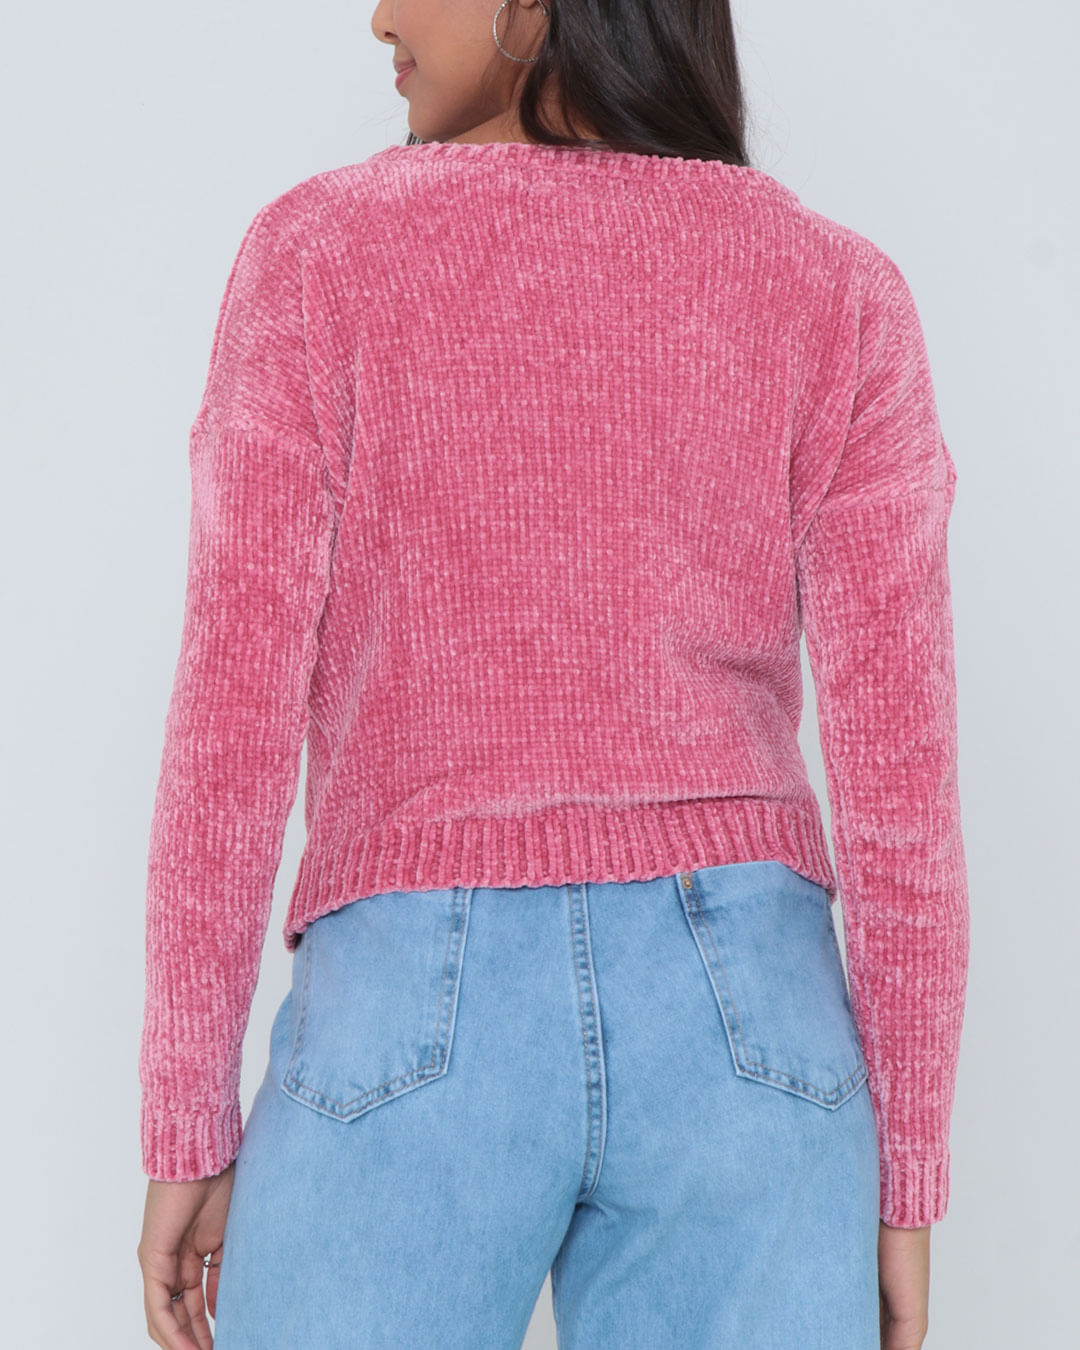 Tricot-Chenille-Sweaterjf-201-Faz---Rosa-Claro